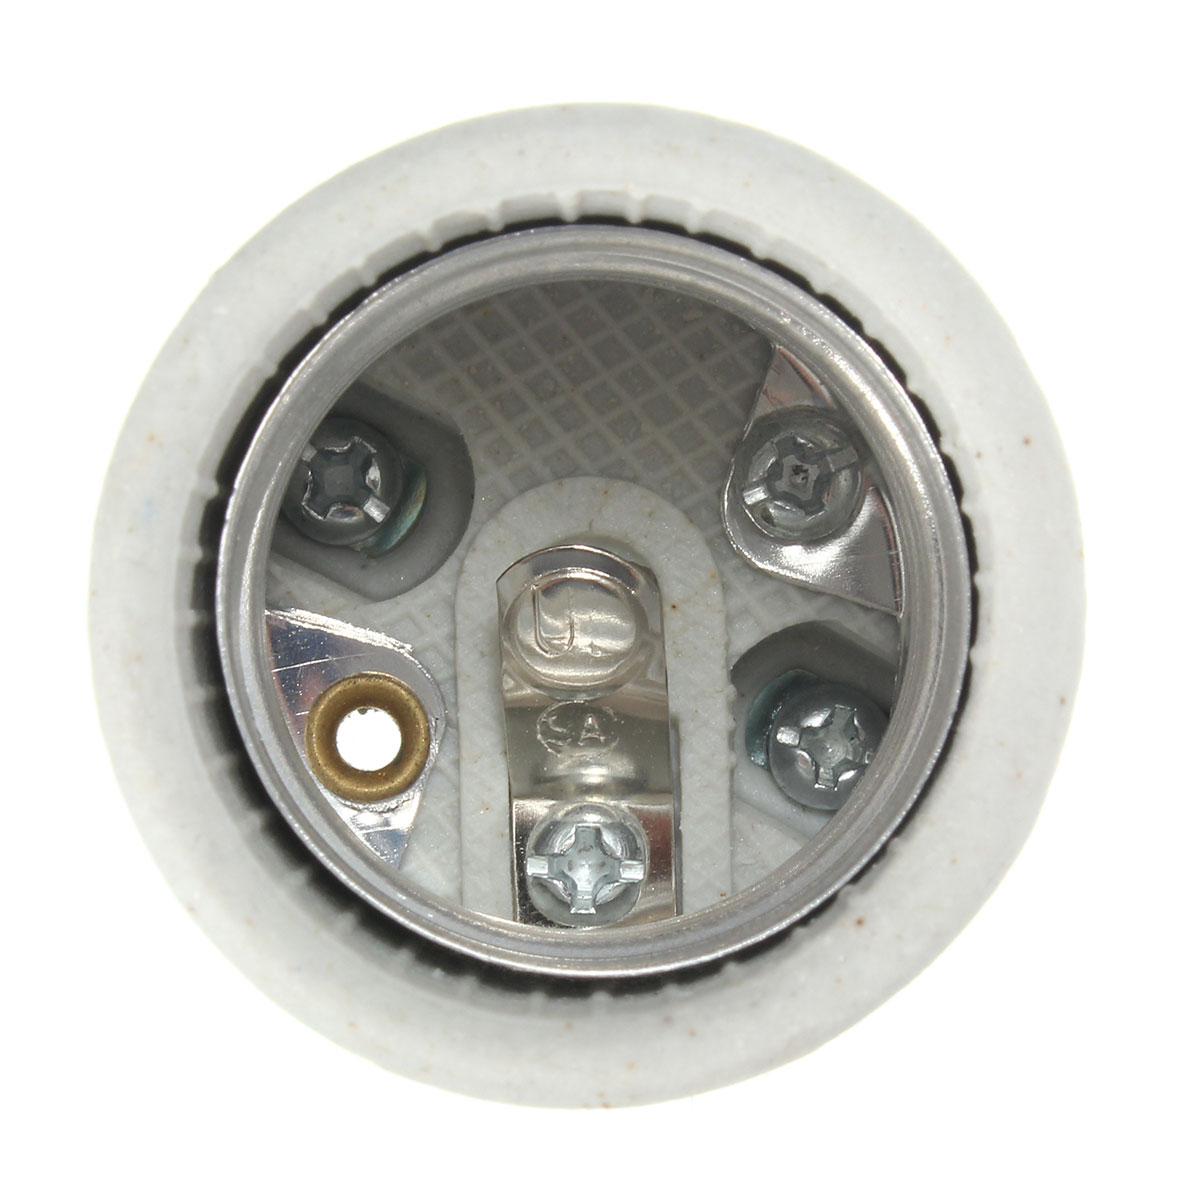 E27 Vintage Copper Edison Light Bulb Adapter Lamp Holder for Pendant Lighting AC110-250V